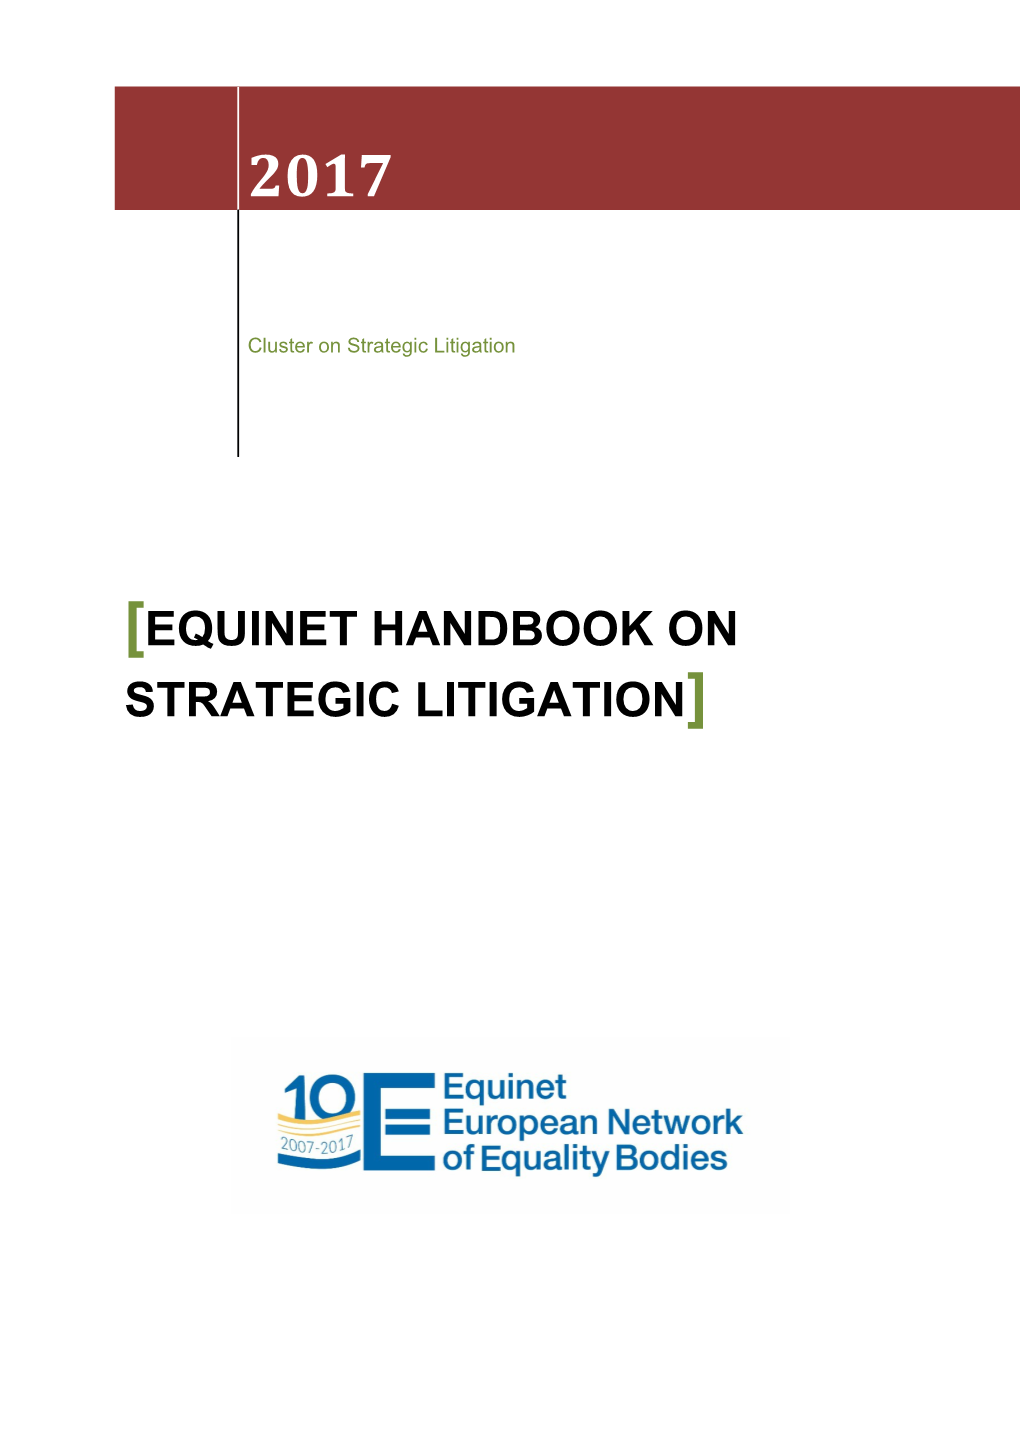 Equinet Handbook on Strategic Litigation